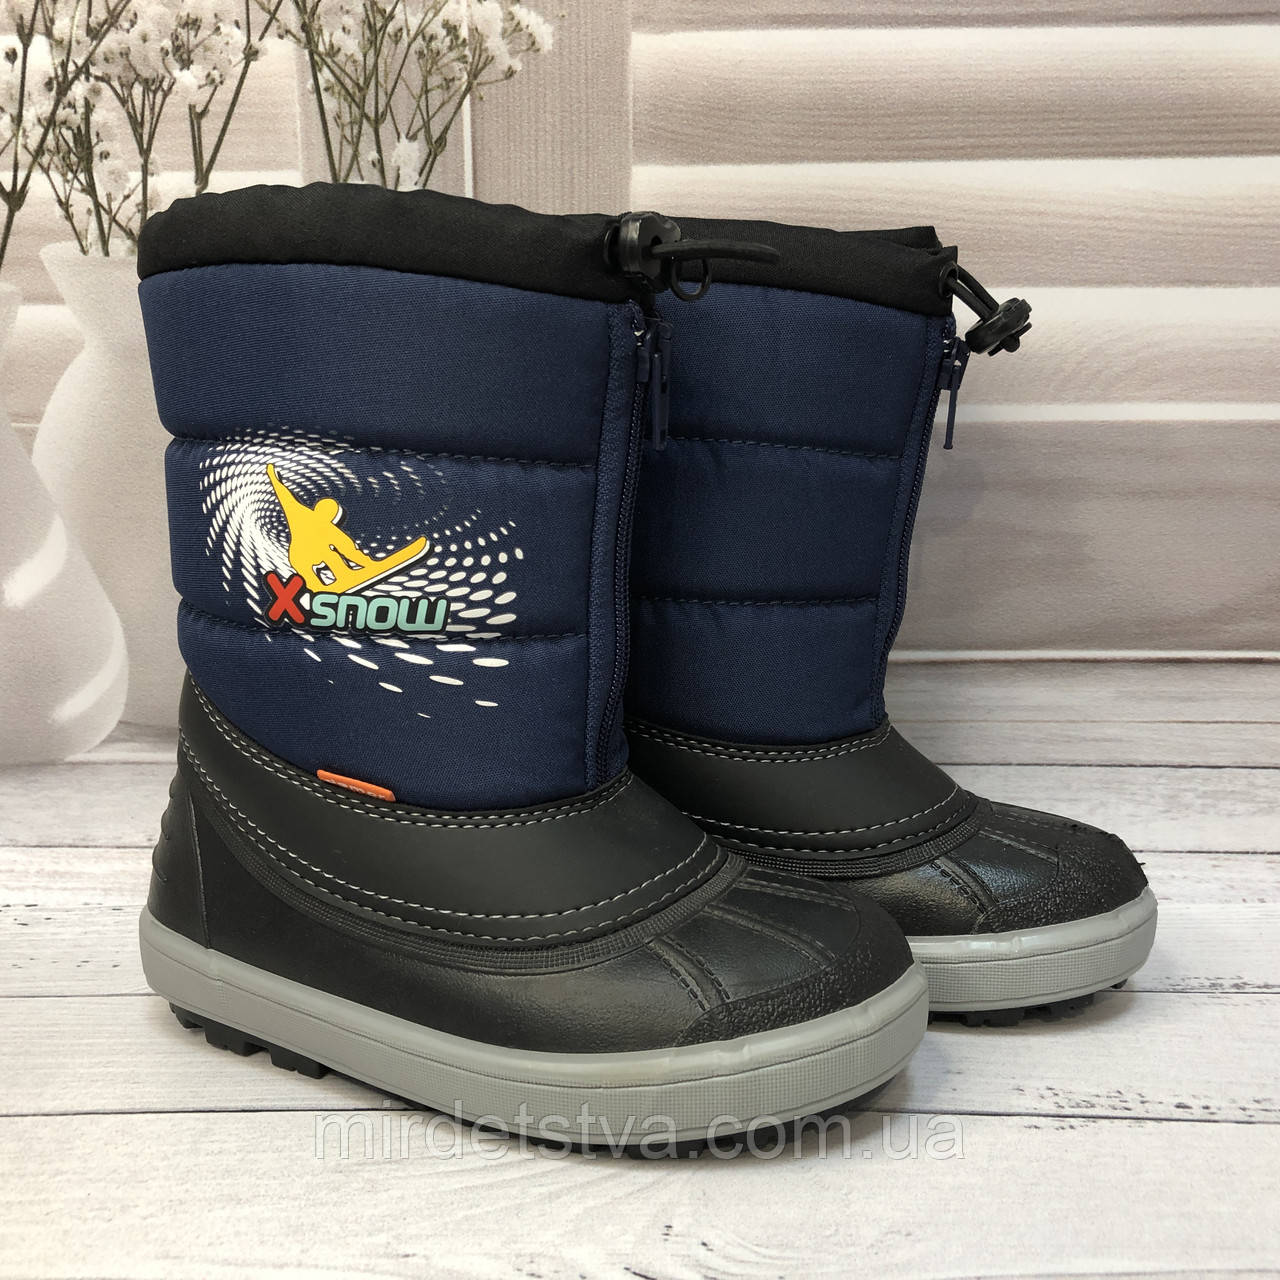 Зимові дитячі чобітки з гумової калошею (сині) для хлопчика X-Snow, розміри 28-29, Demar